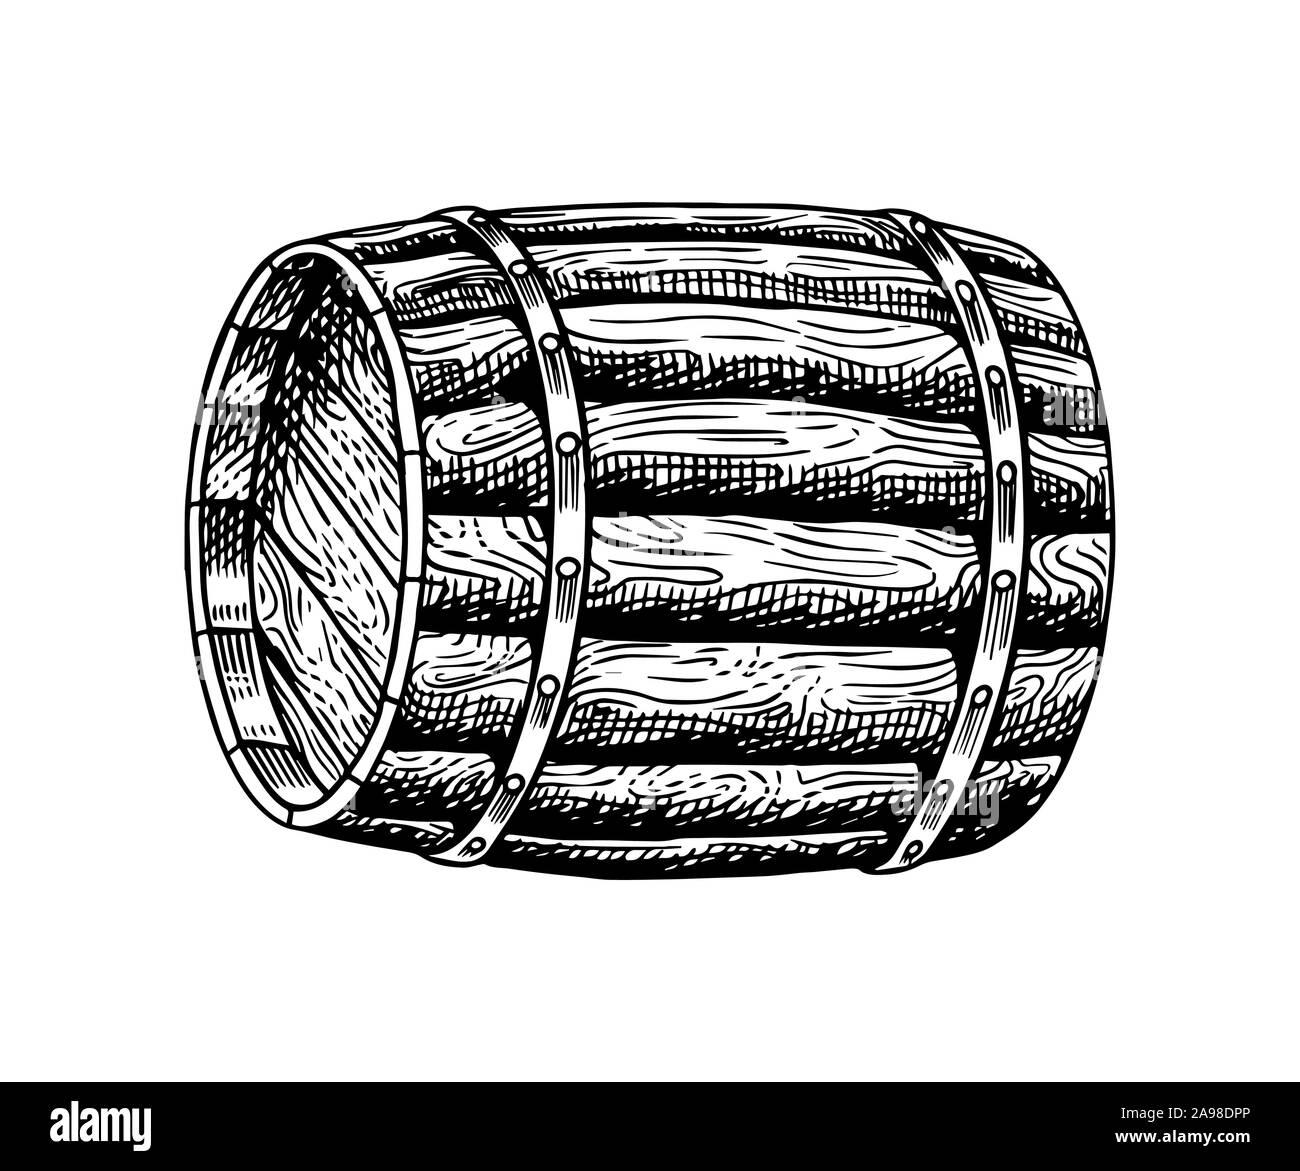 Tonel de vino de madera. Grabado dibujado a mano vintage retro boceto para el logo o whisky etiqueta o menú de alcohol. Ilustración vectorial. Ilustración del Vector